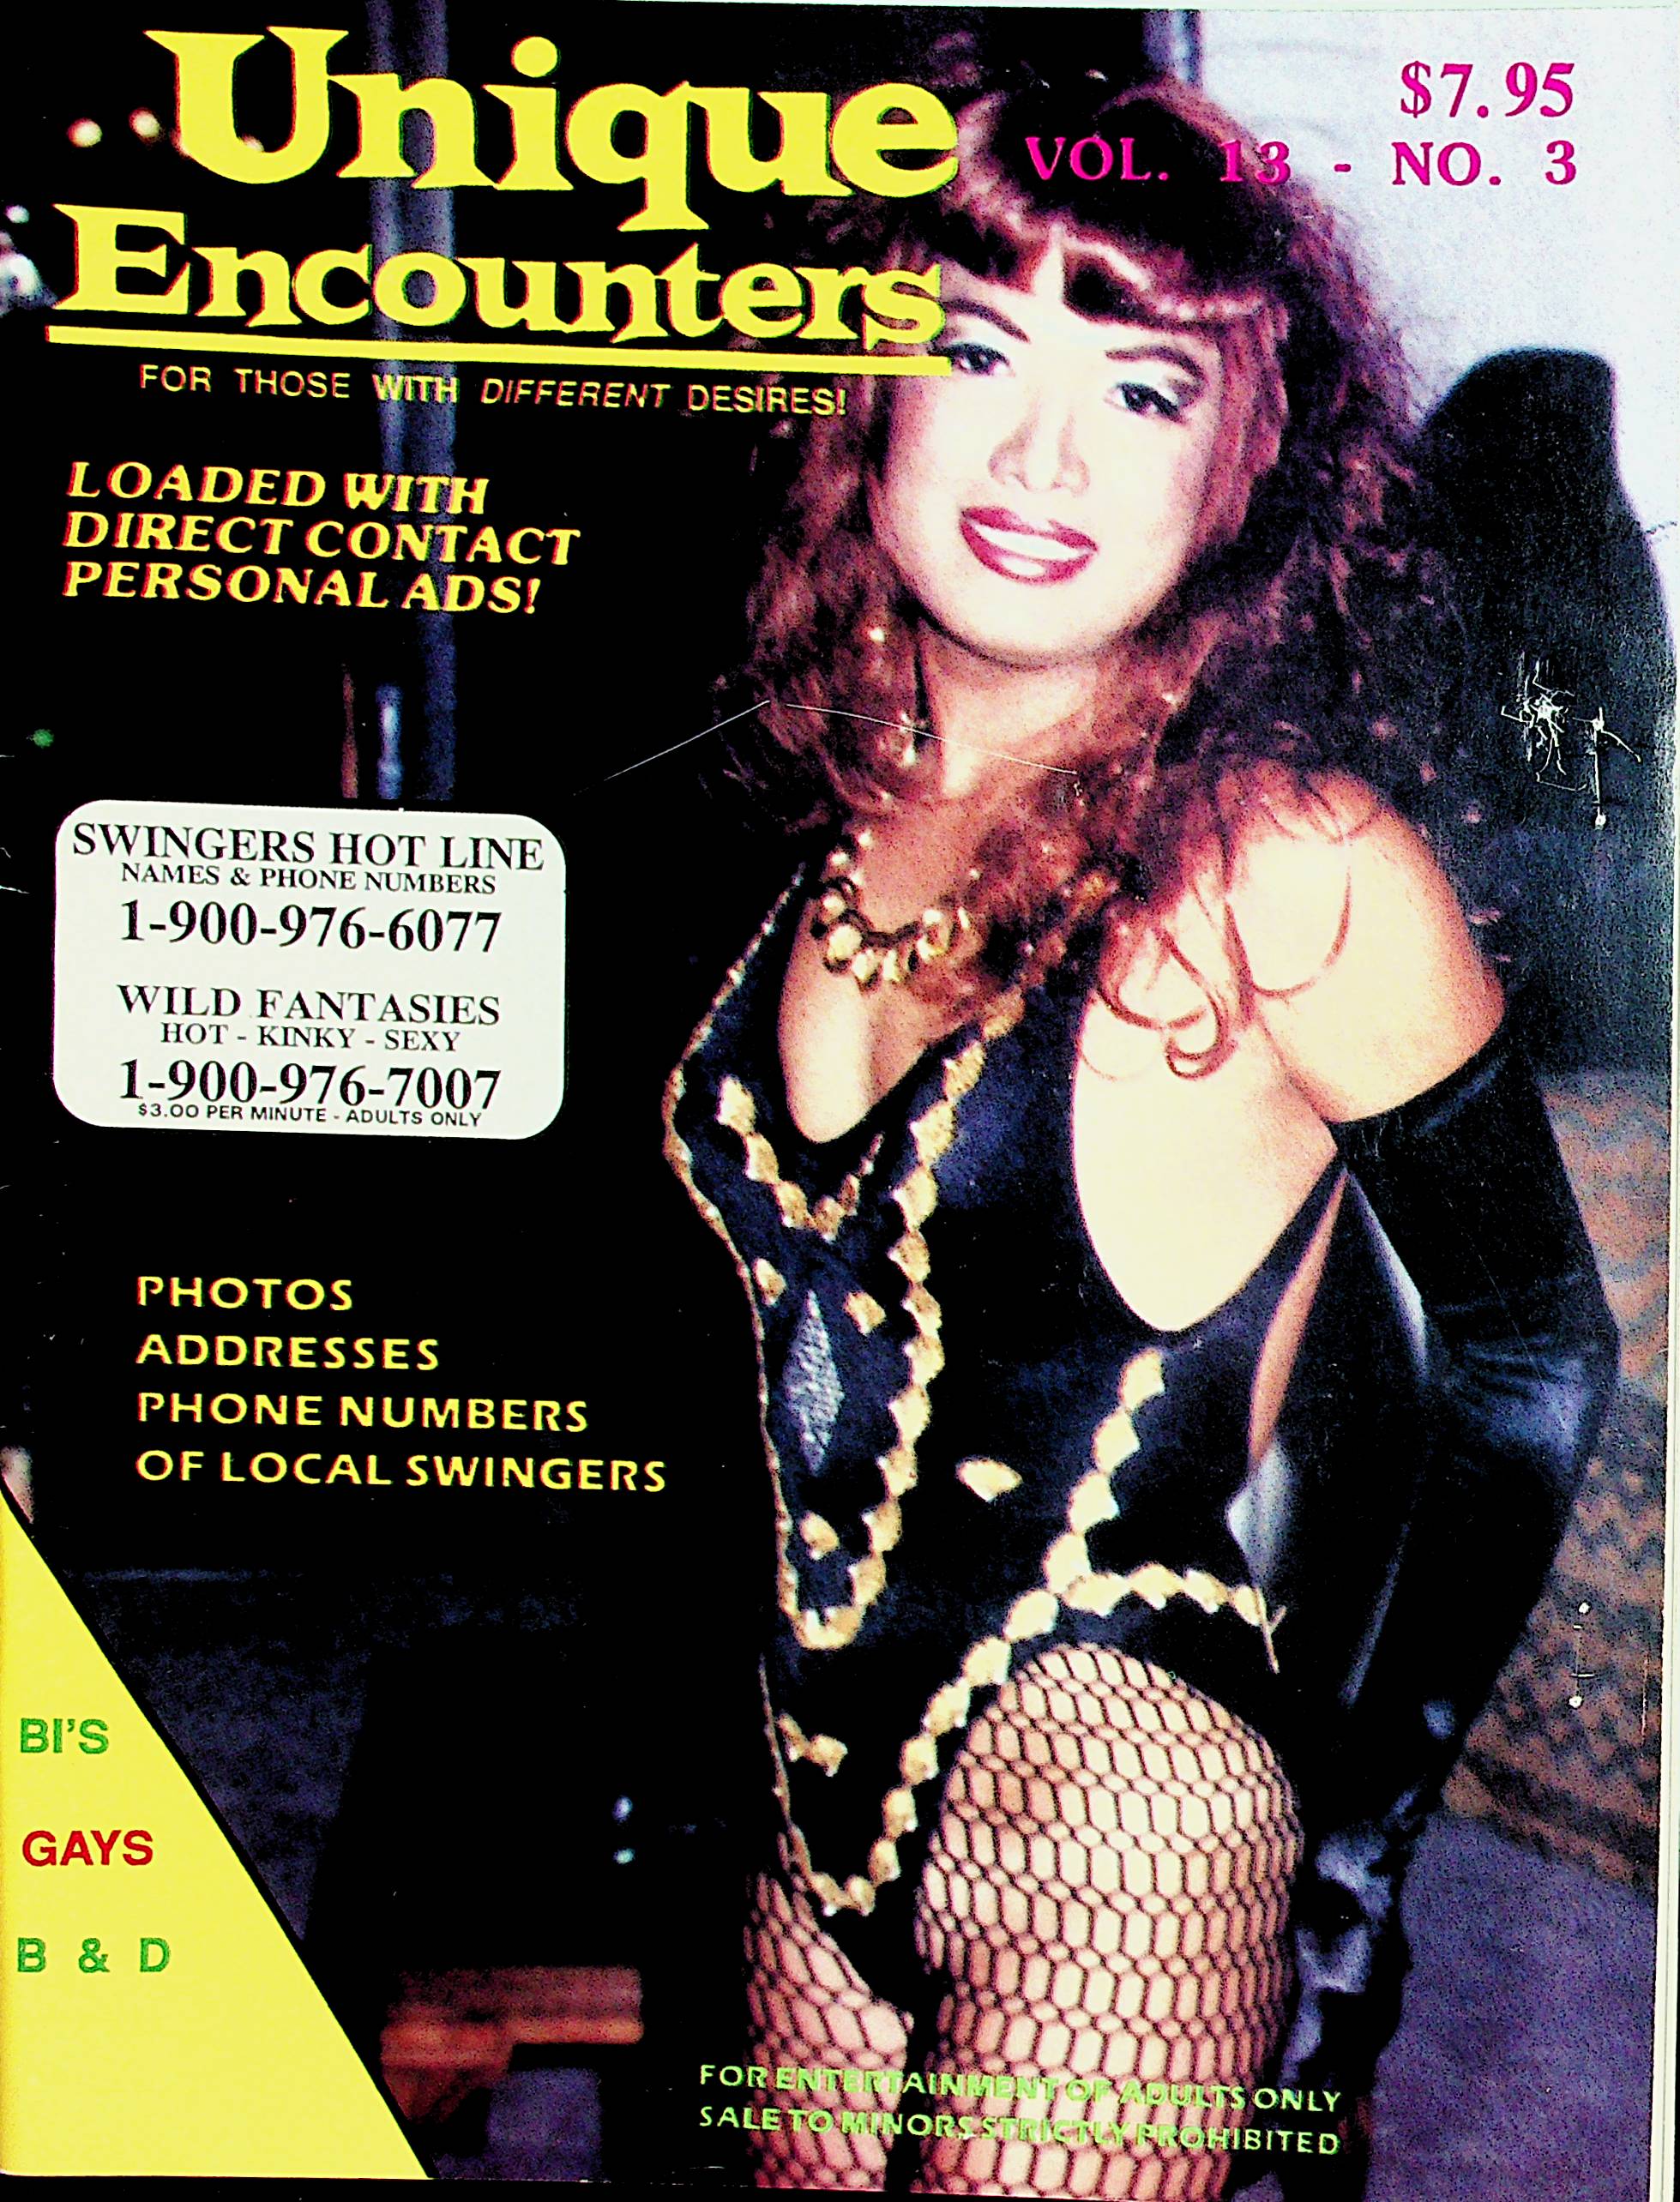 Unique Encounters Contact Magazine vol.13 #3 1993 012622lm-dm pic pic